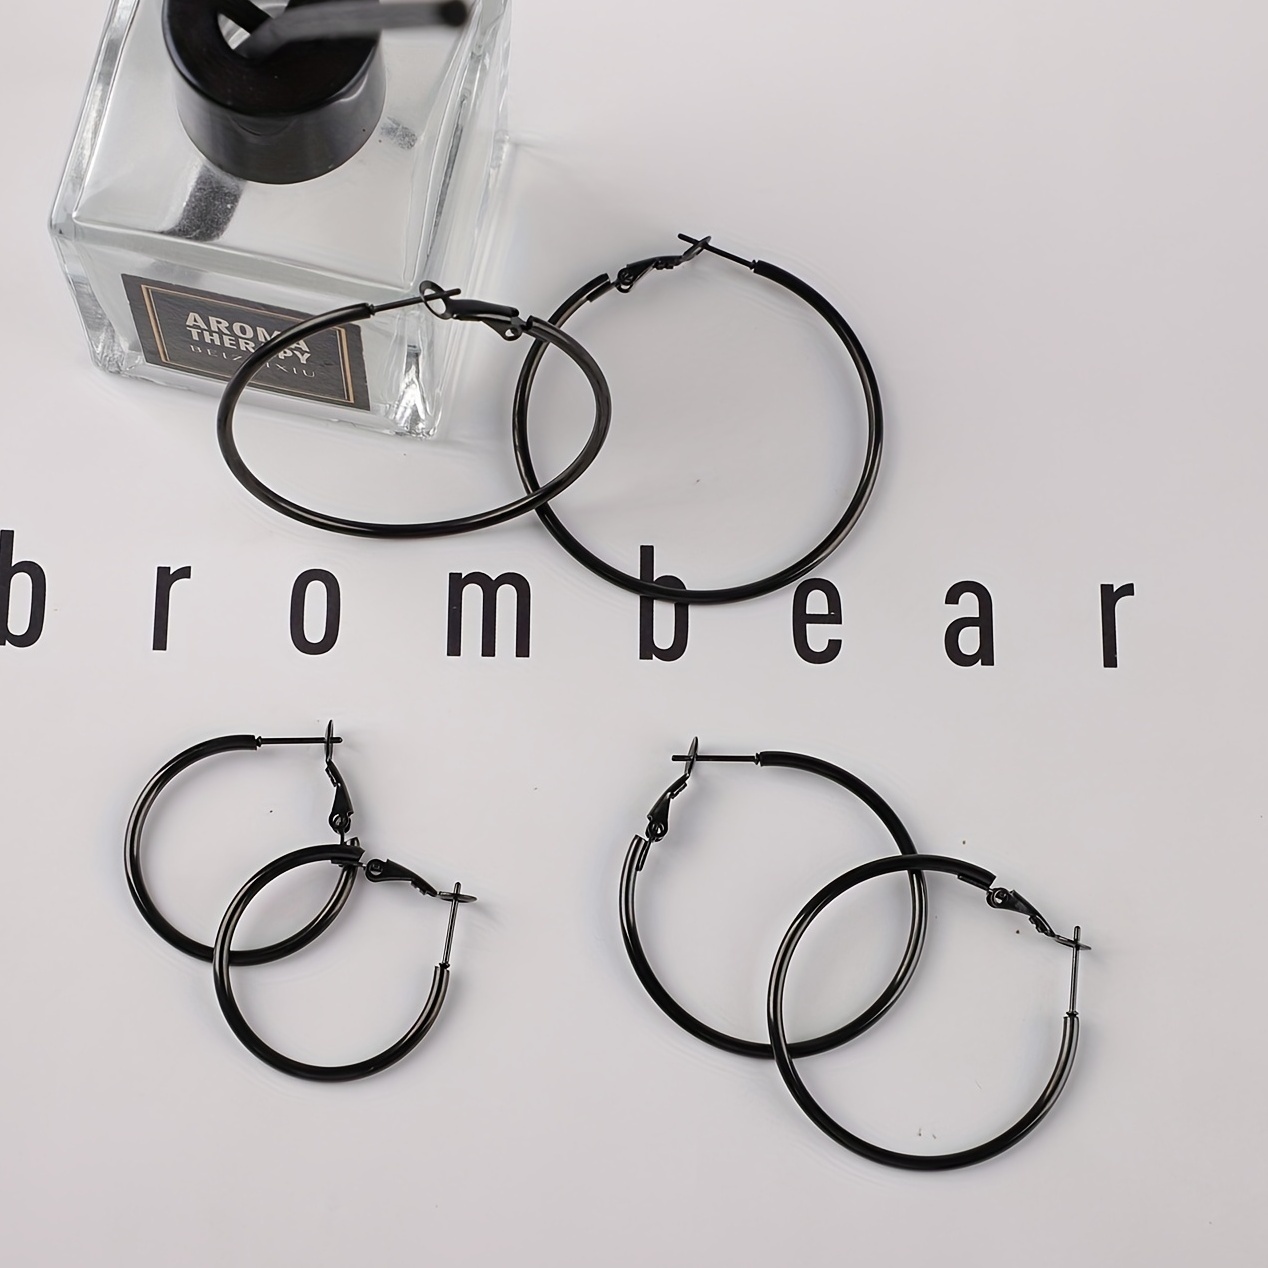 

3pairs Stainless Steel Black Personality Earrings For Women Girls, Hypoallergenic Hoop Women's Earrings Hoop Earrings Set (30.40.50mm)